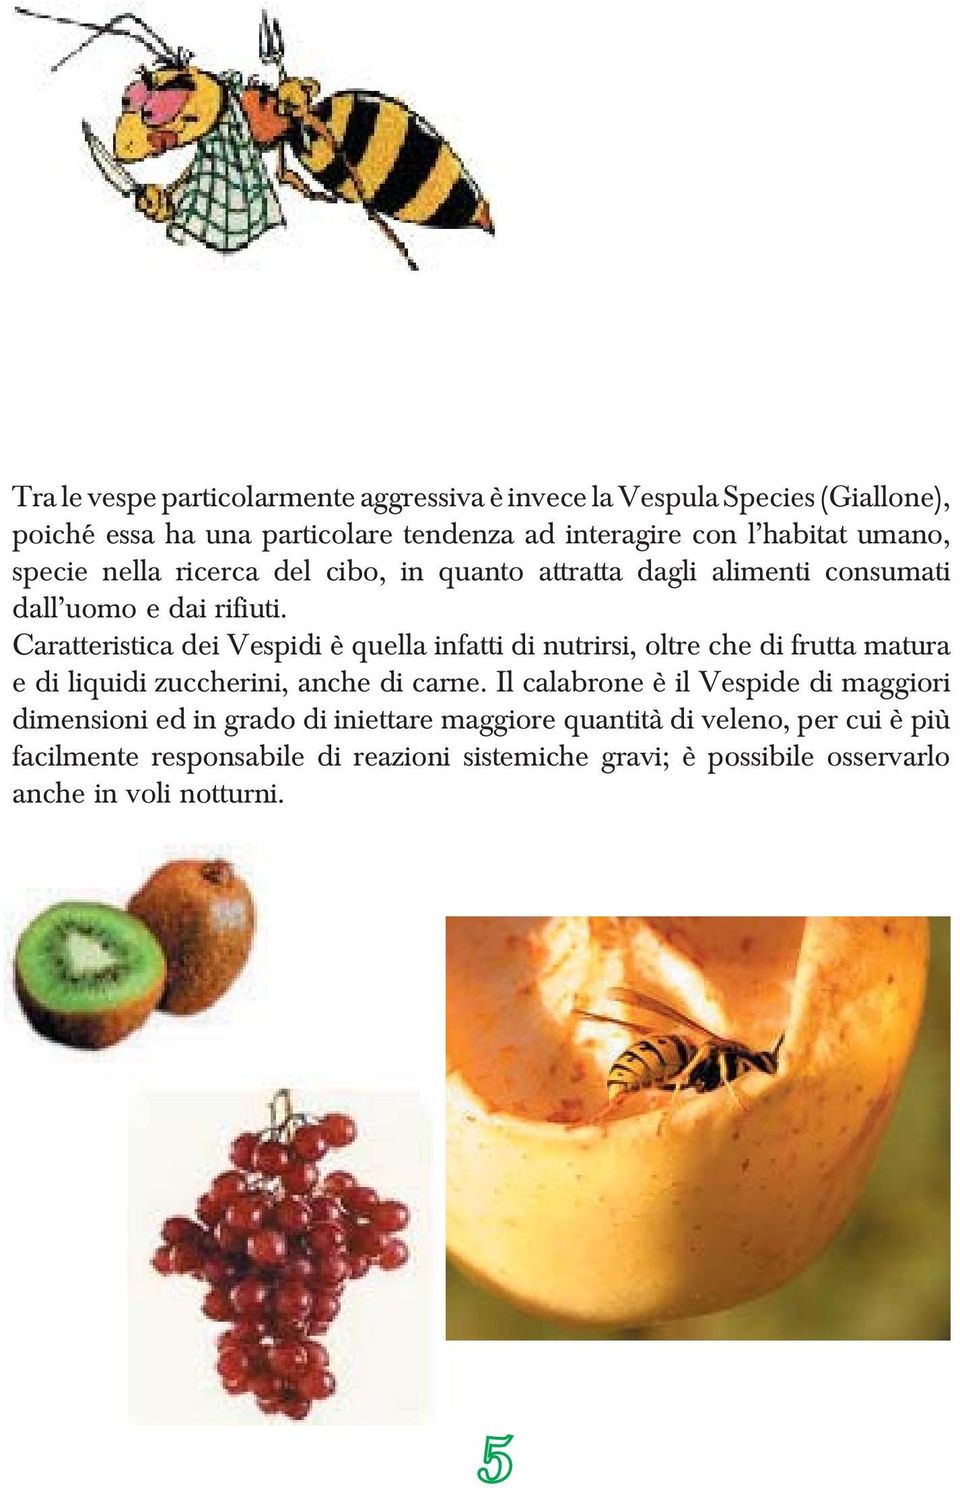 Caratteristica dei Vespidi è quella infatti di nutrirsi, oltre che di frutta matura e di liquidi zuccherini, anche di carne.